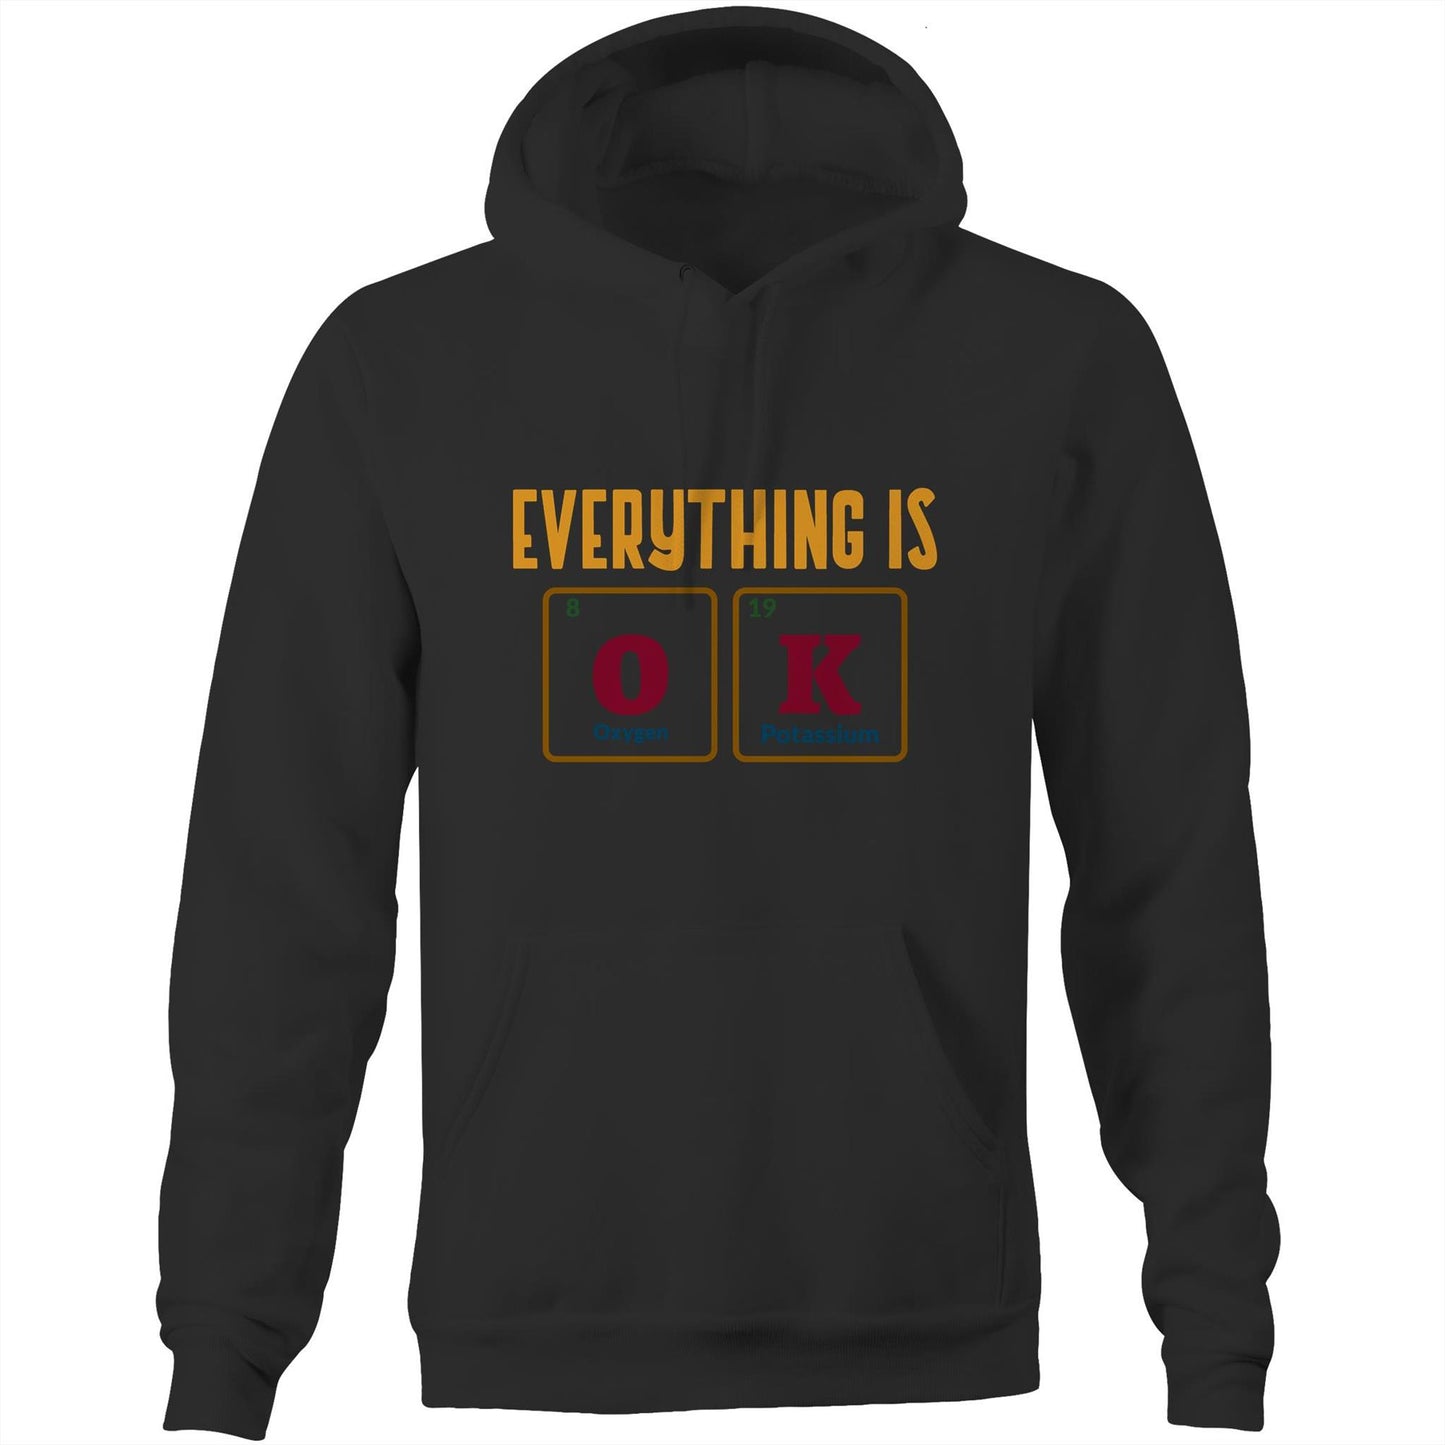 Everything Is OK, Periodic Table Of Elements - Pocket Hoodie Sweatshirt Black Hoodie Science